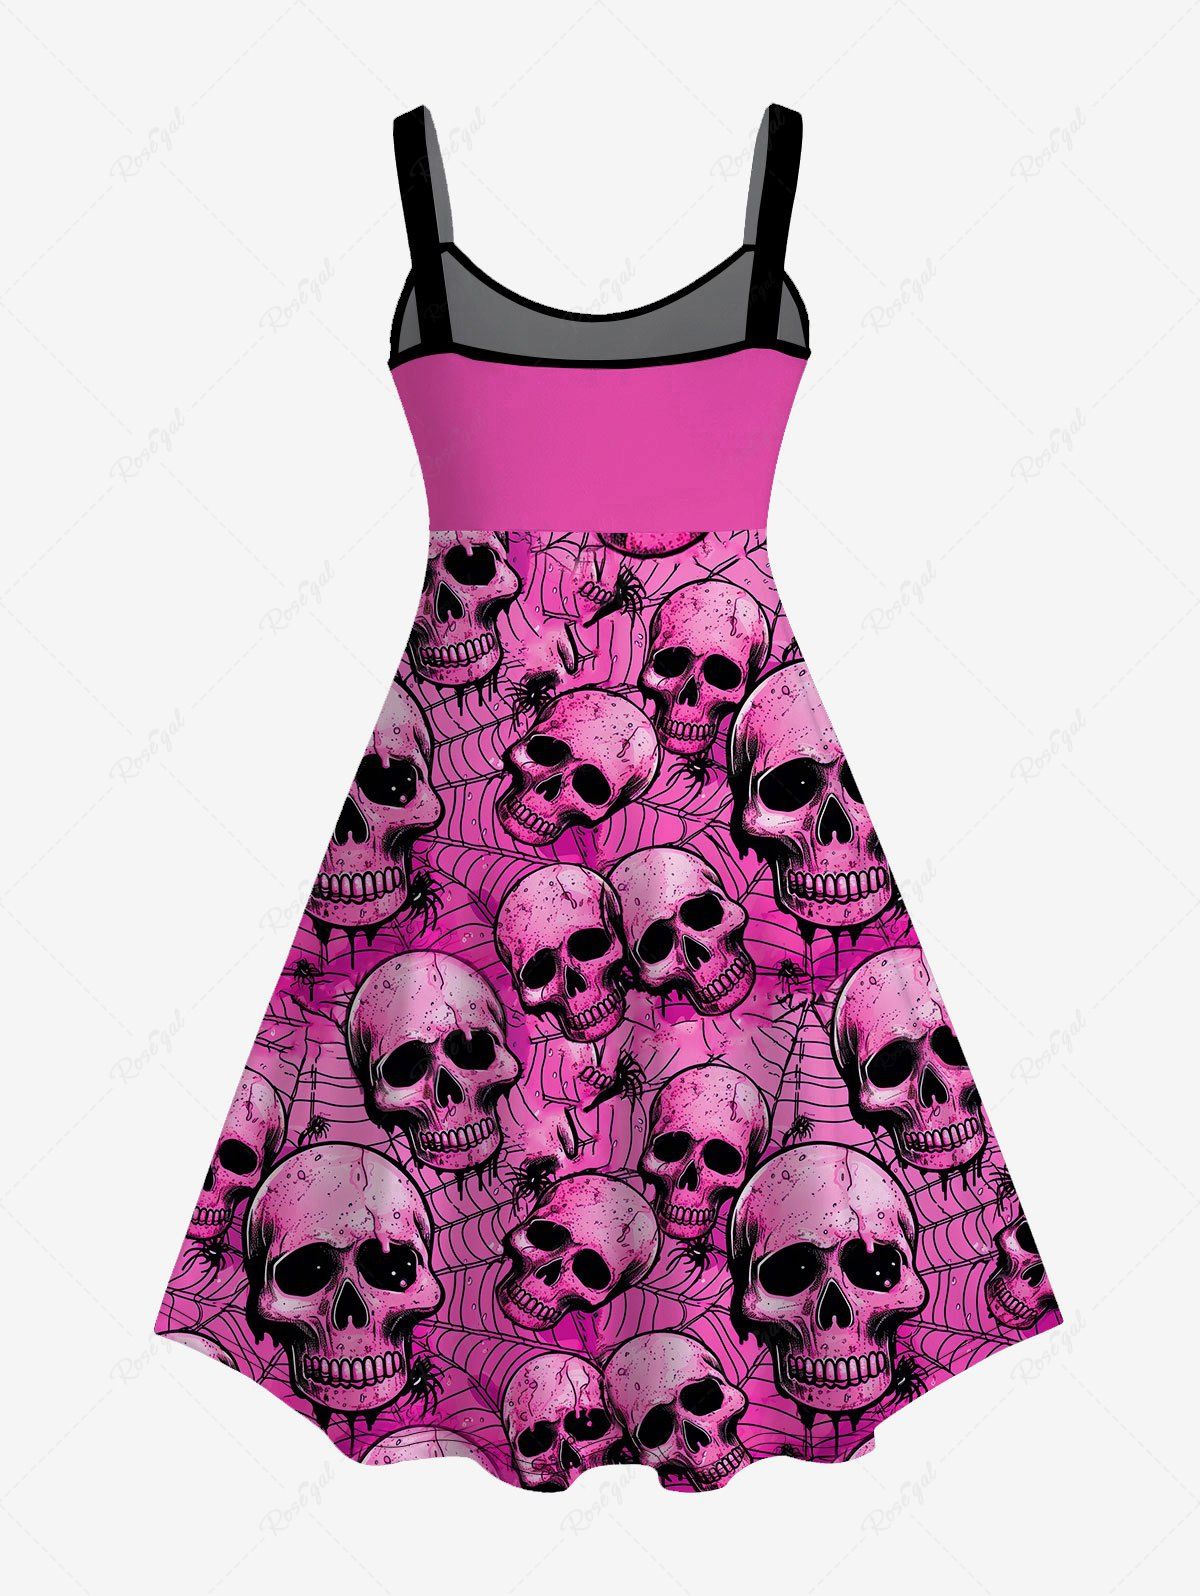 💗Tabbytragedy Loves💗 Gothic Valentine's Day Skulls Skeleton Spider Web Print Tank Dress